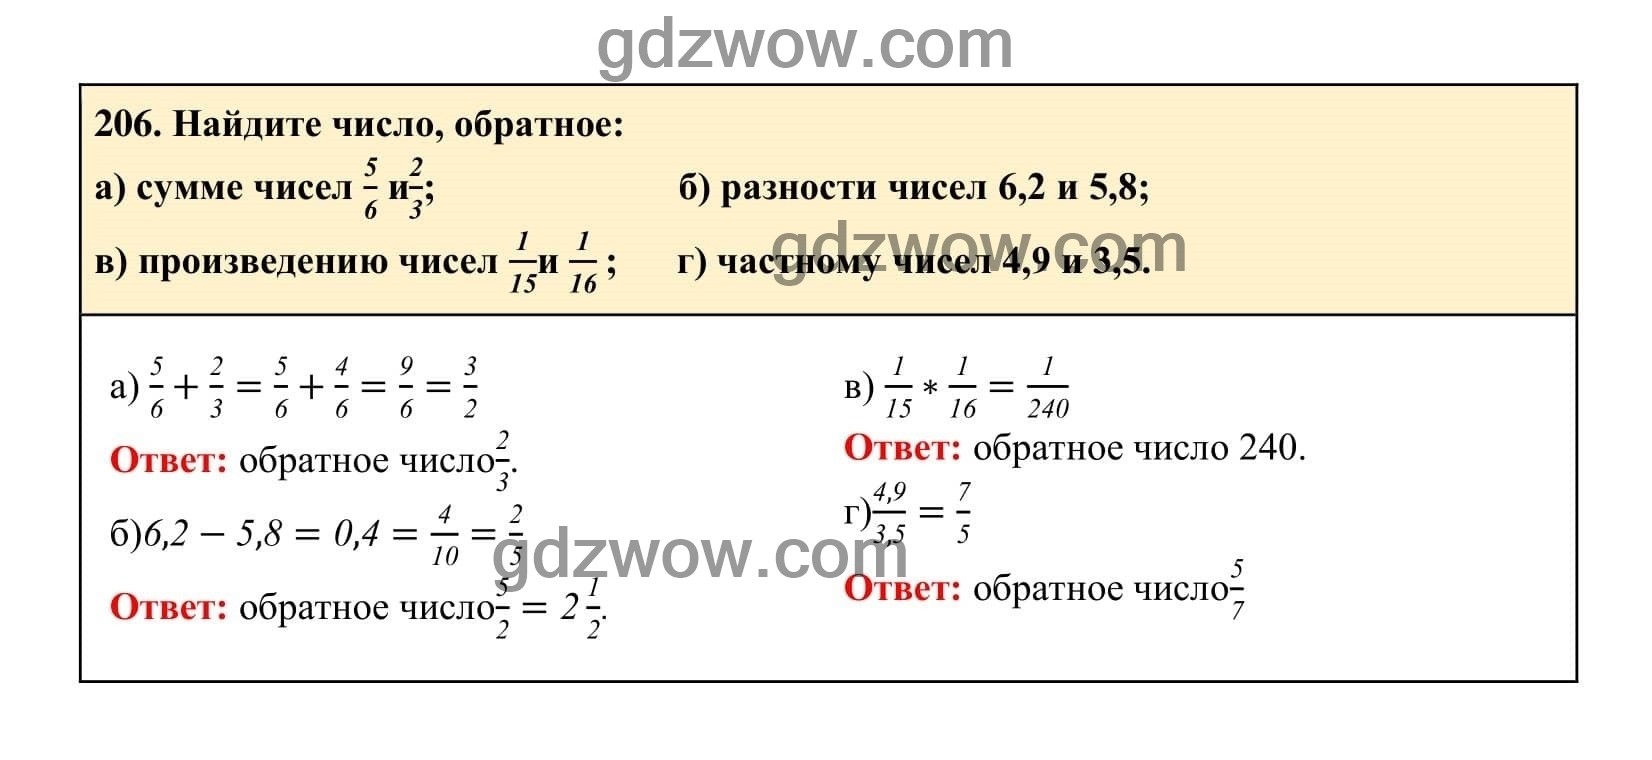 Упражнение 206 - ГДЗ по Алгебре 7 класс Учебник Макарычев (решебник) - GDZwow